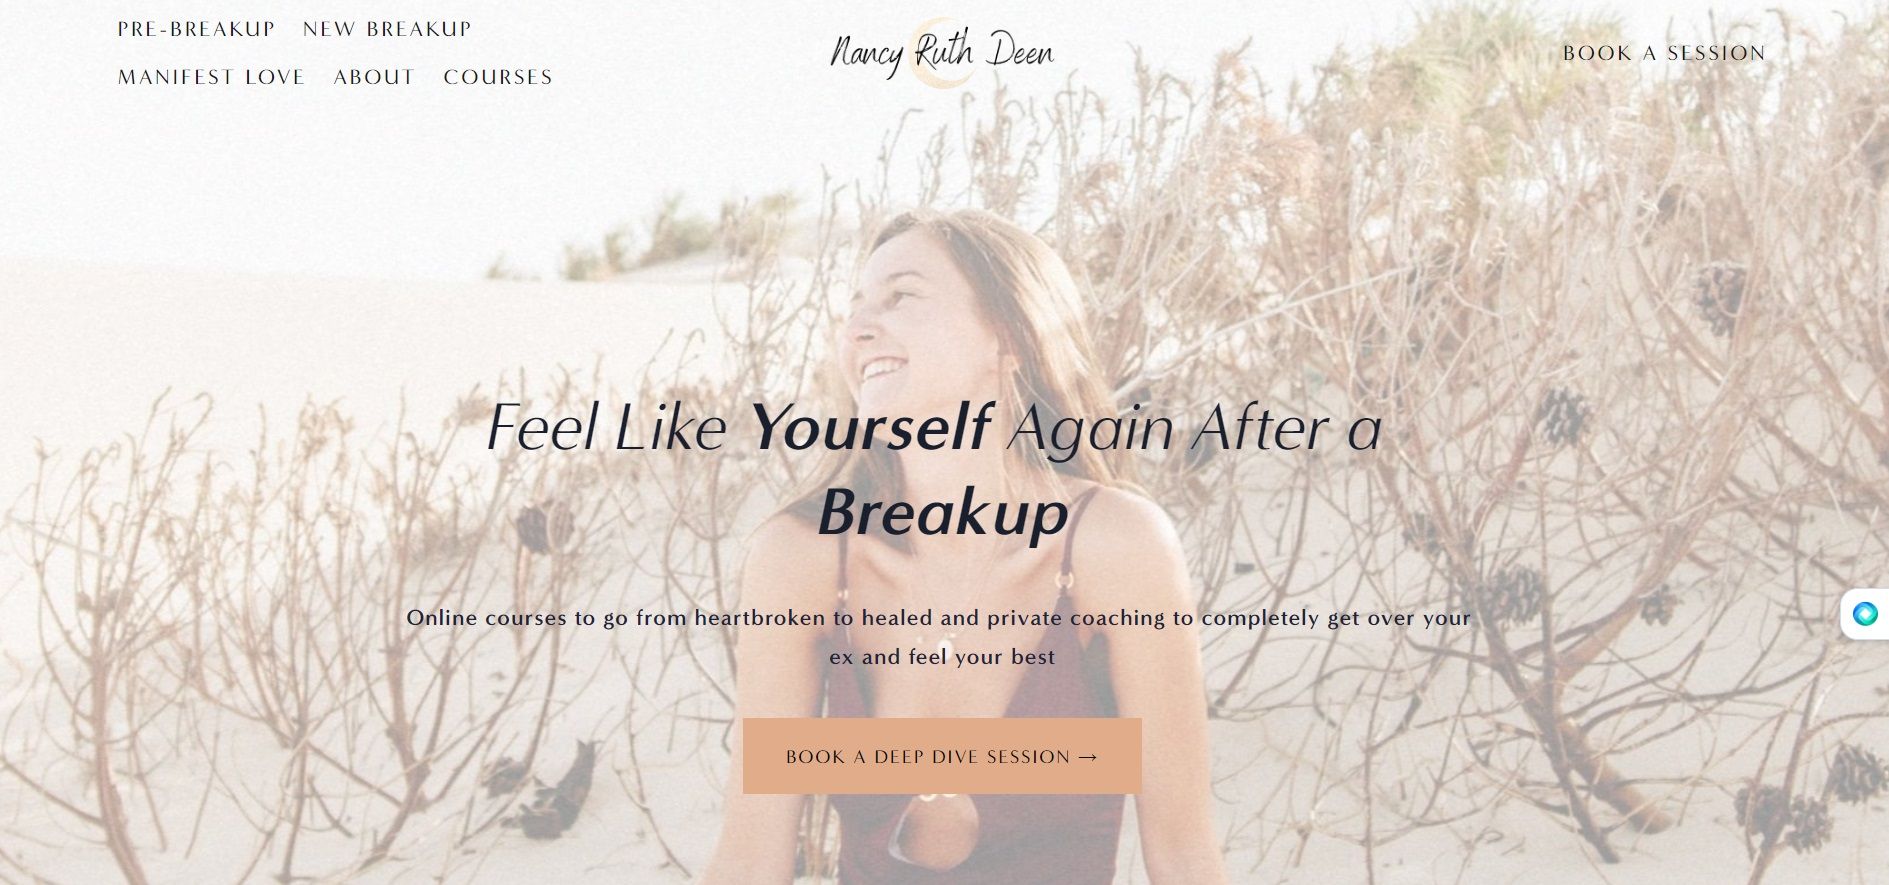 Nancy Ruth Deen's breakup website